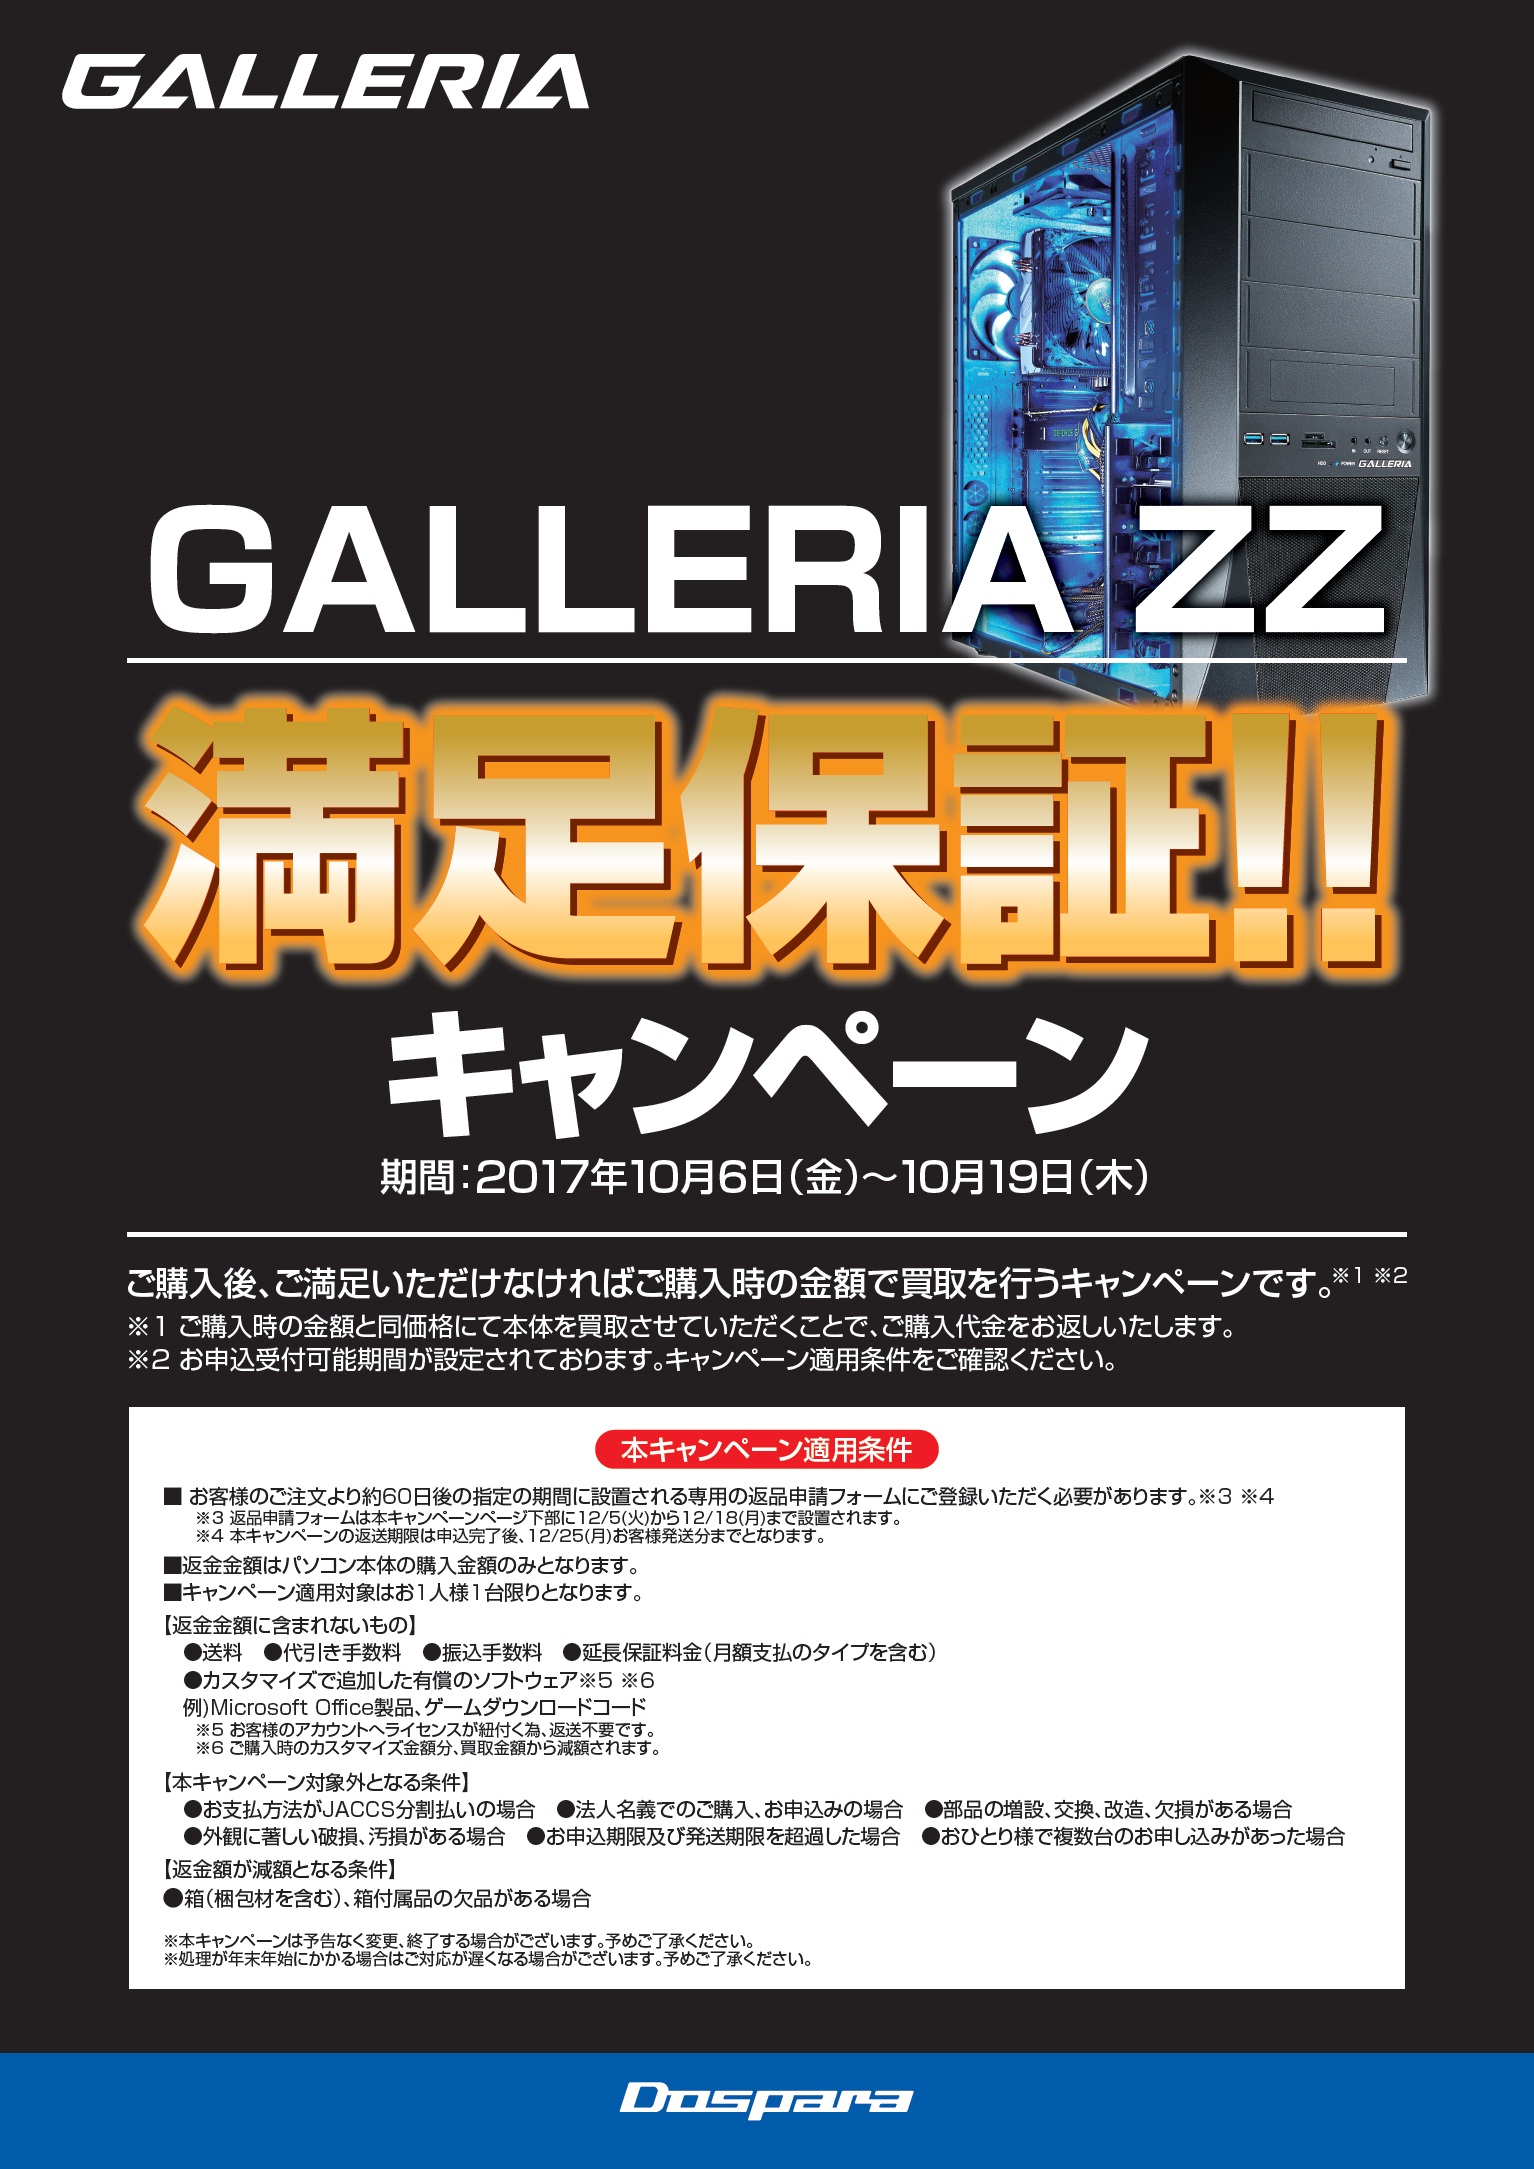 ゲームPC「GALLERIA ZZ」で「満足できなければ全額返金」のキャンペーンが始まる。期間限定